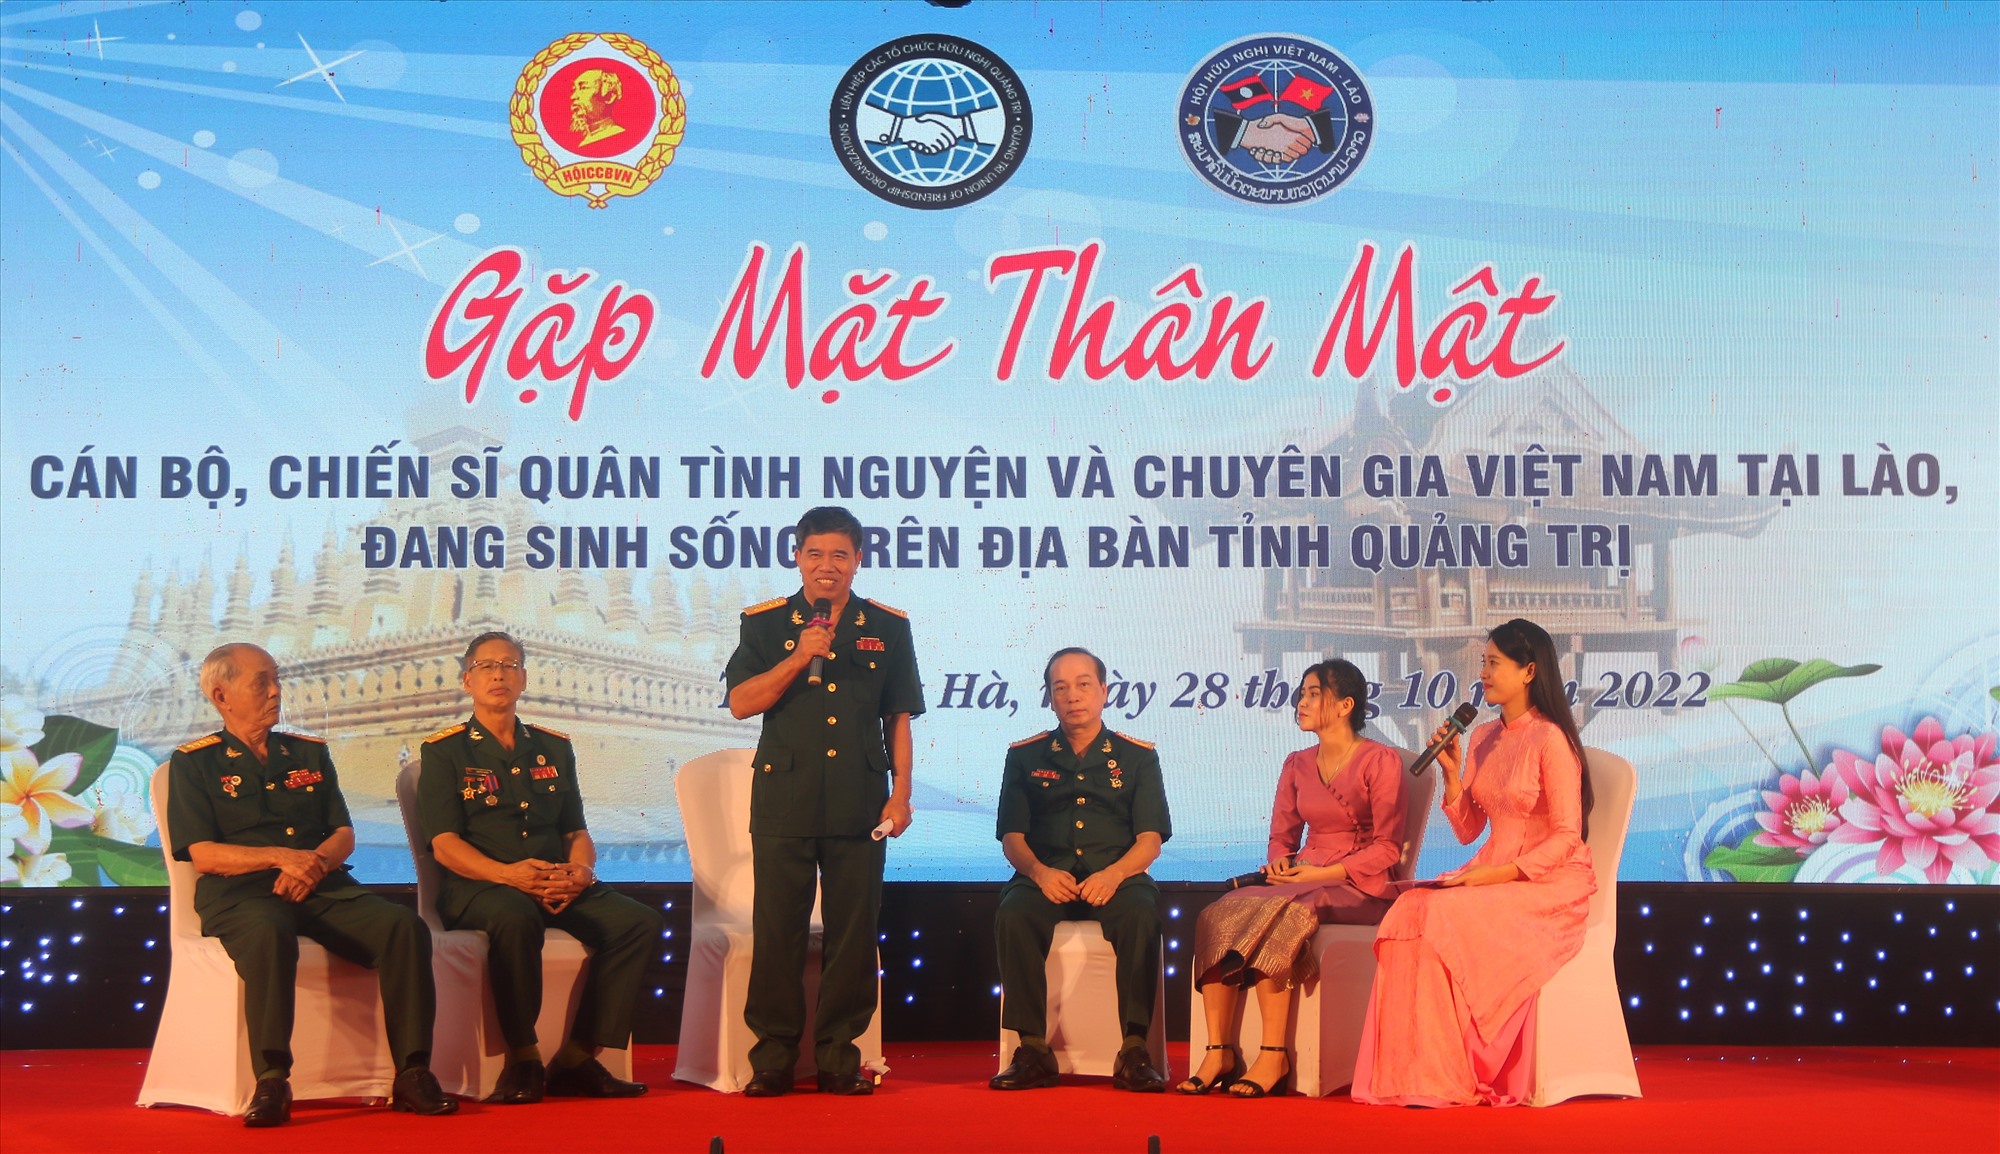 Các cán bộ, chiến sĩ quân tình nguyện, chuyên gia Việt Nam tại Lào ôn lại truyền thống, giao lưu cùng với thế hệ thanh niên nước bạn Lào - Ảnh: N.B